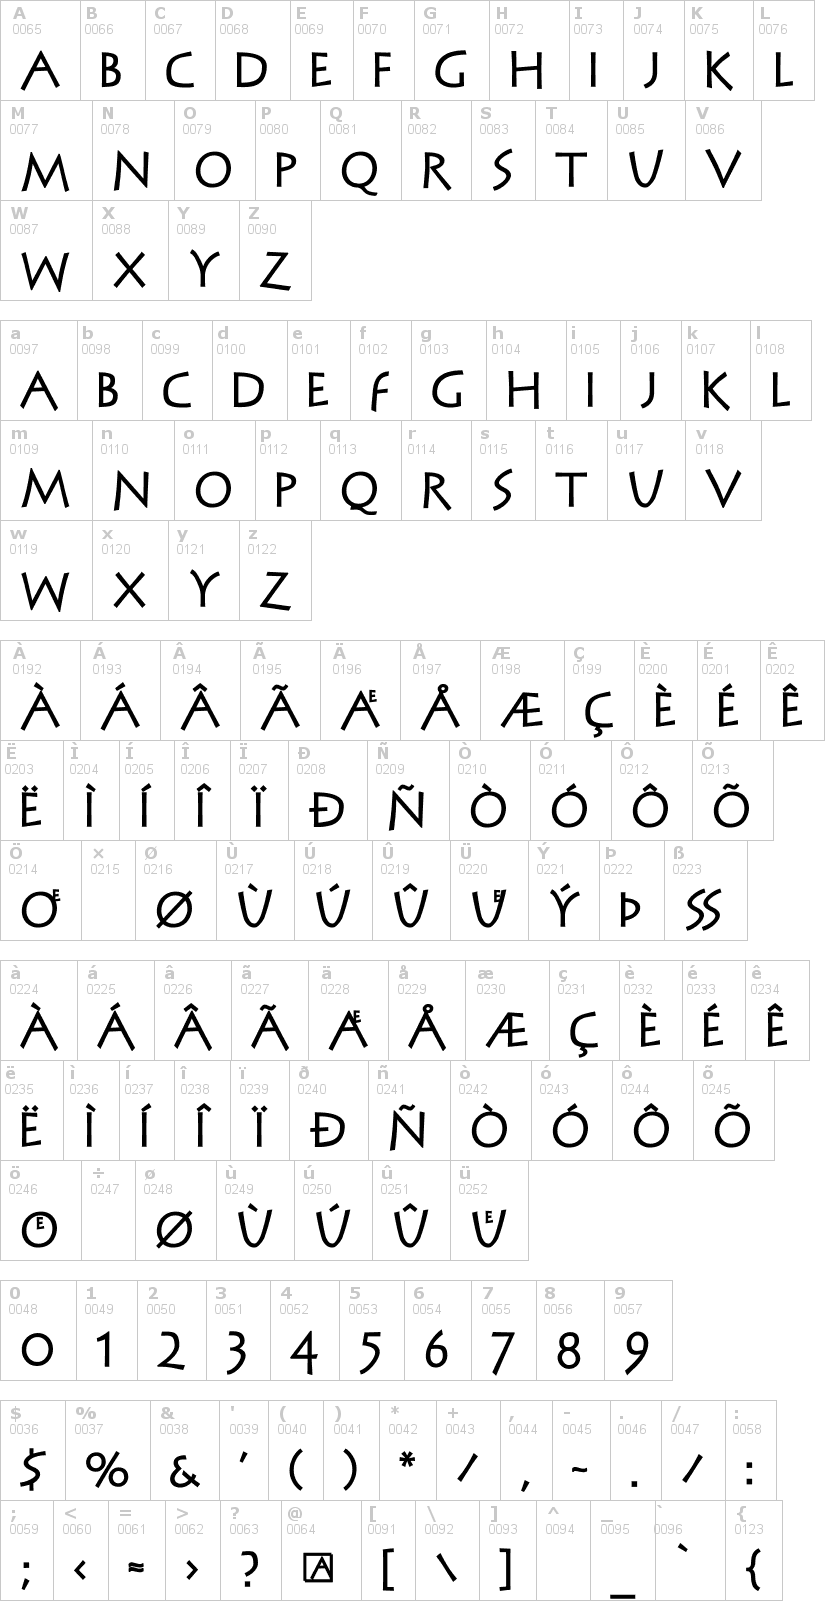 Lettere dell'alfabeto del font steinantik con le quali è possibile realizzare adesivi prespaziati